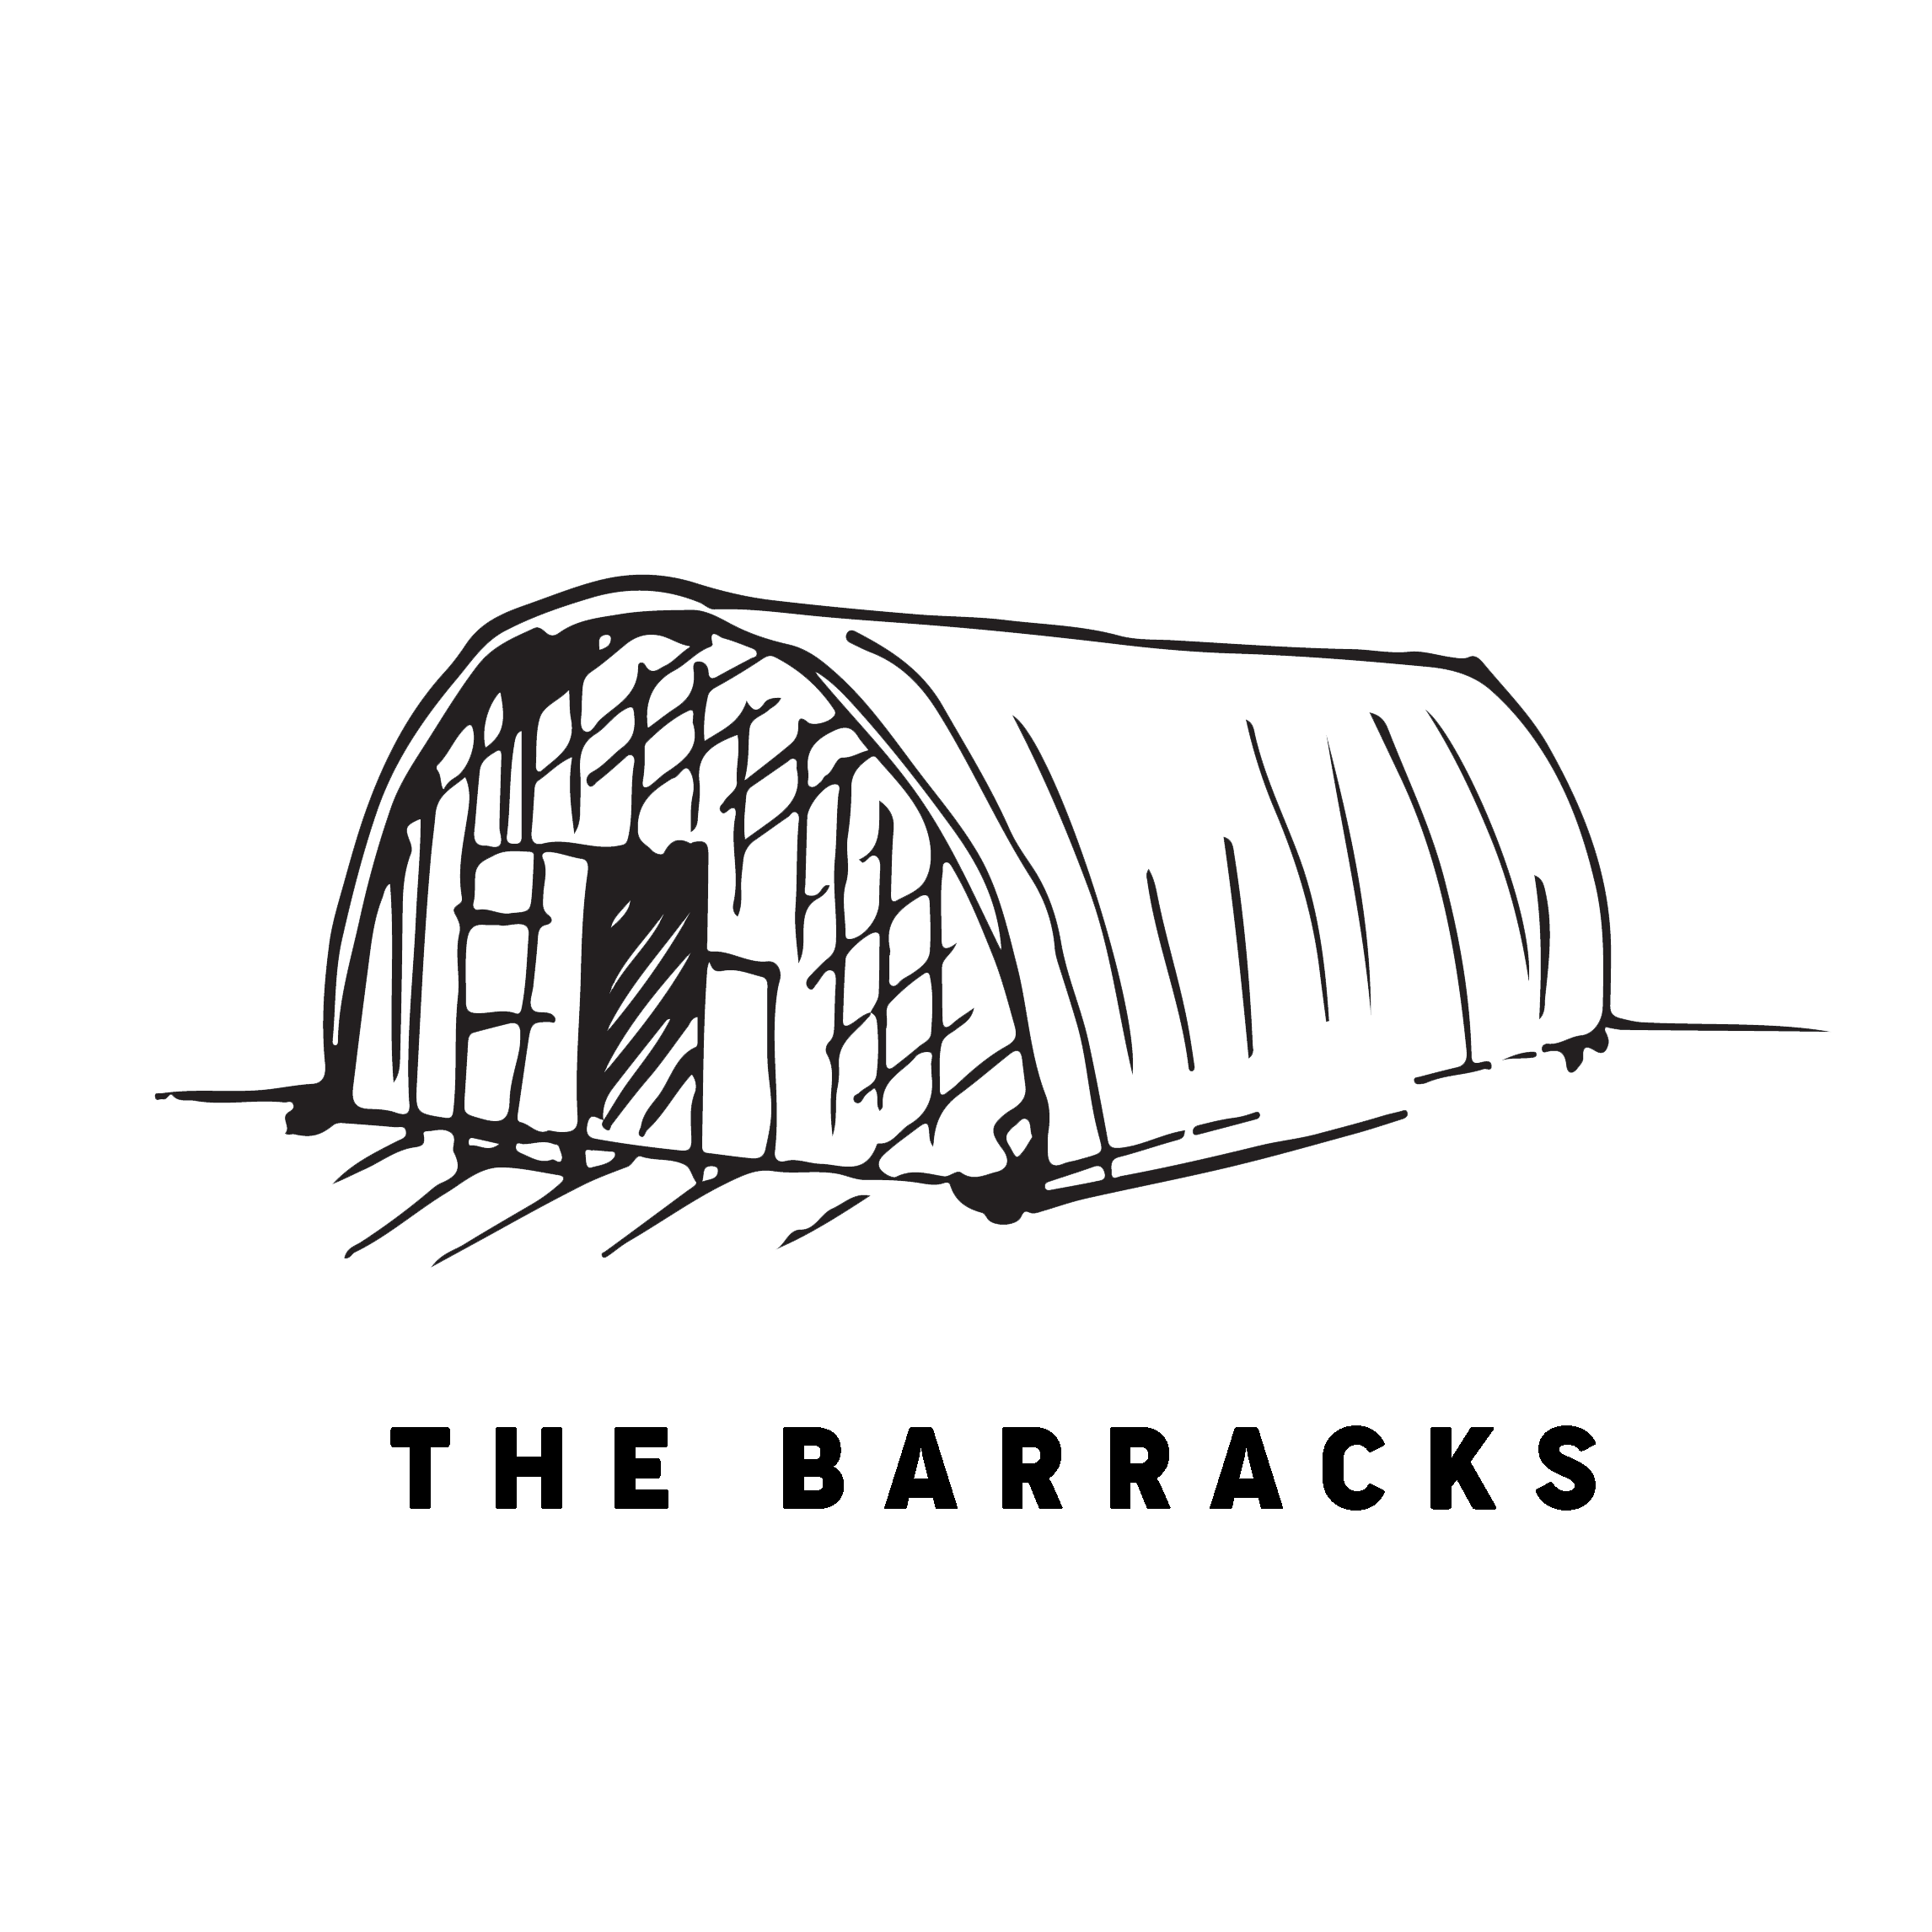 THE BARRACKS